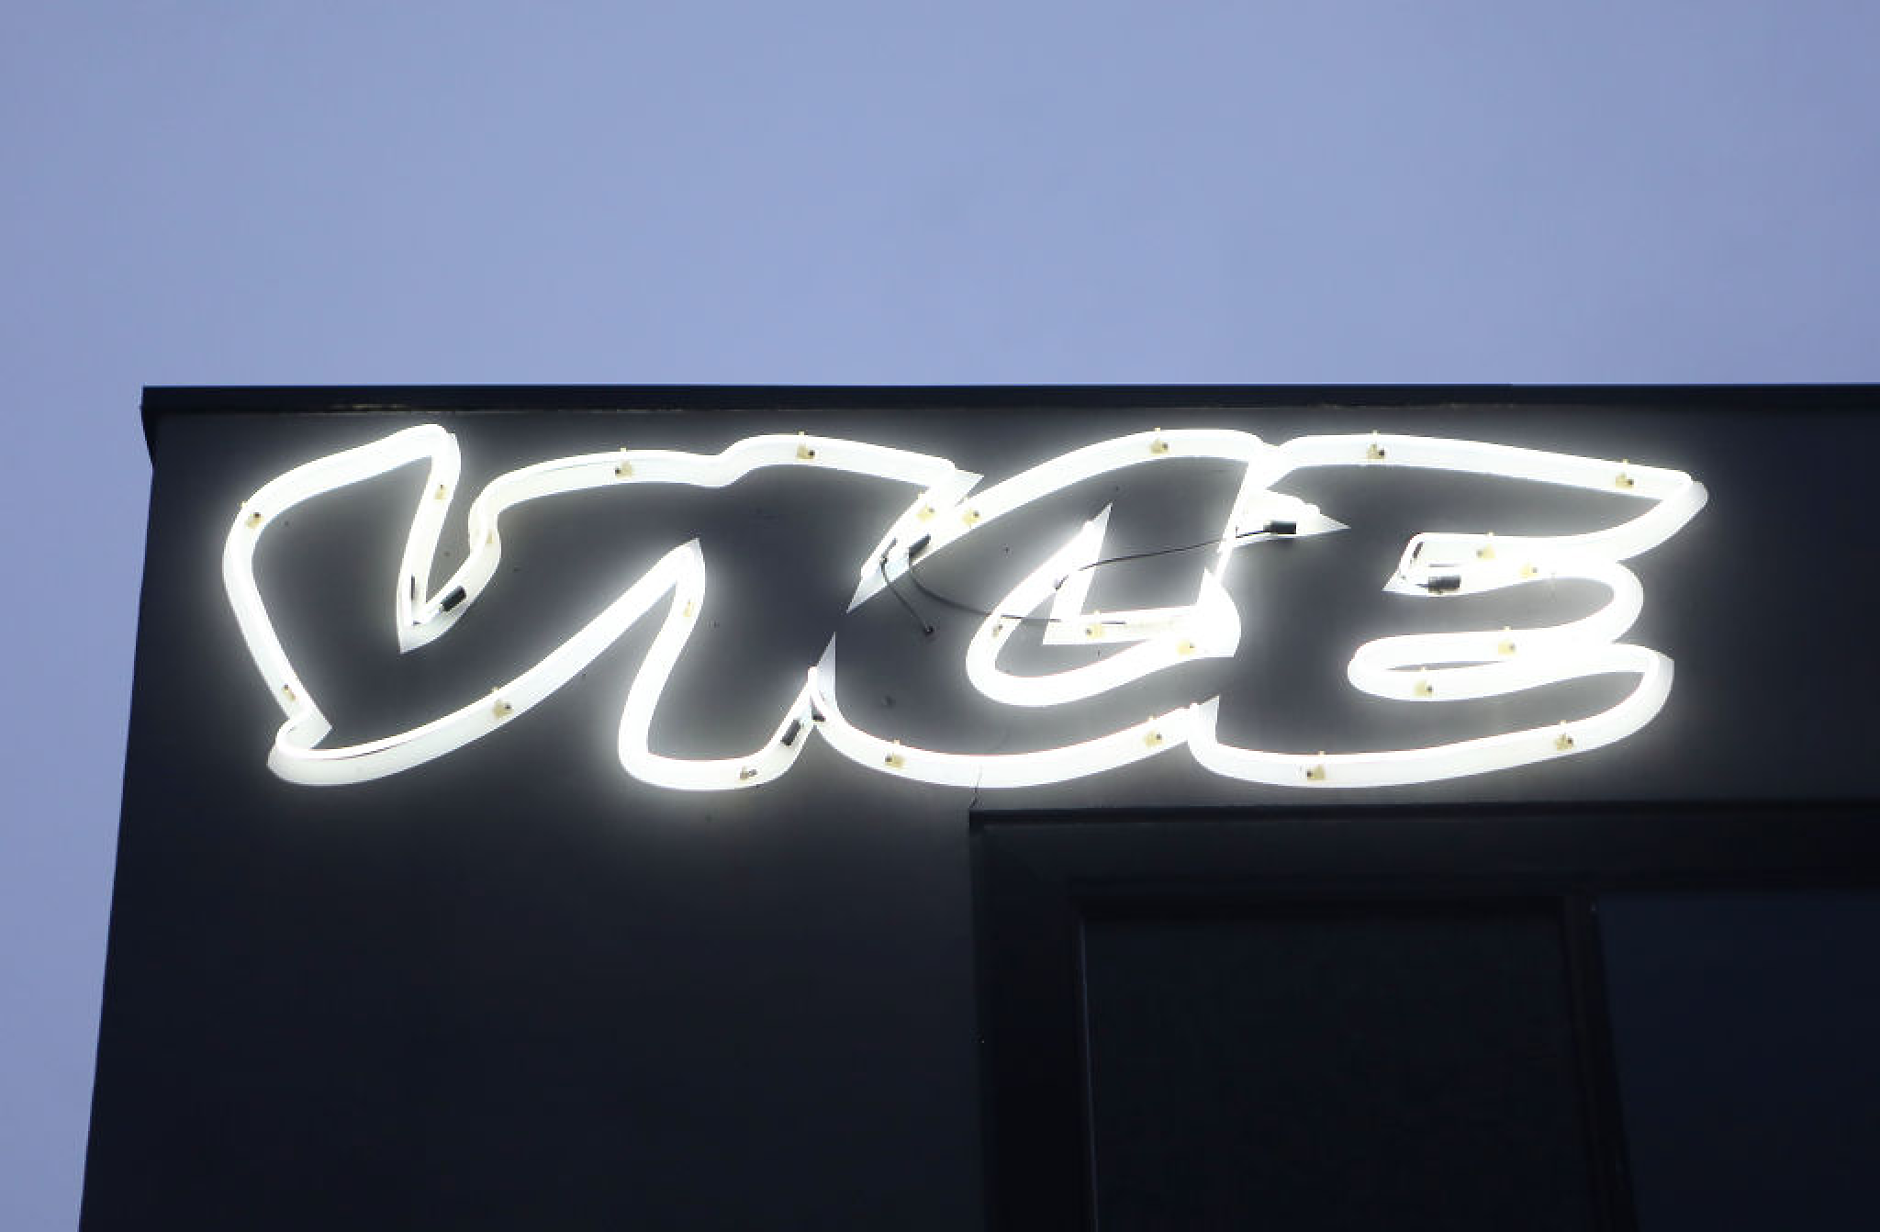 Vice Media Group обяви фалит в САЩ